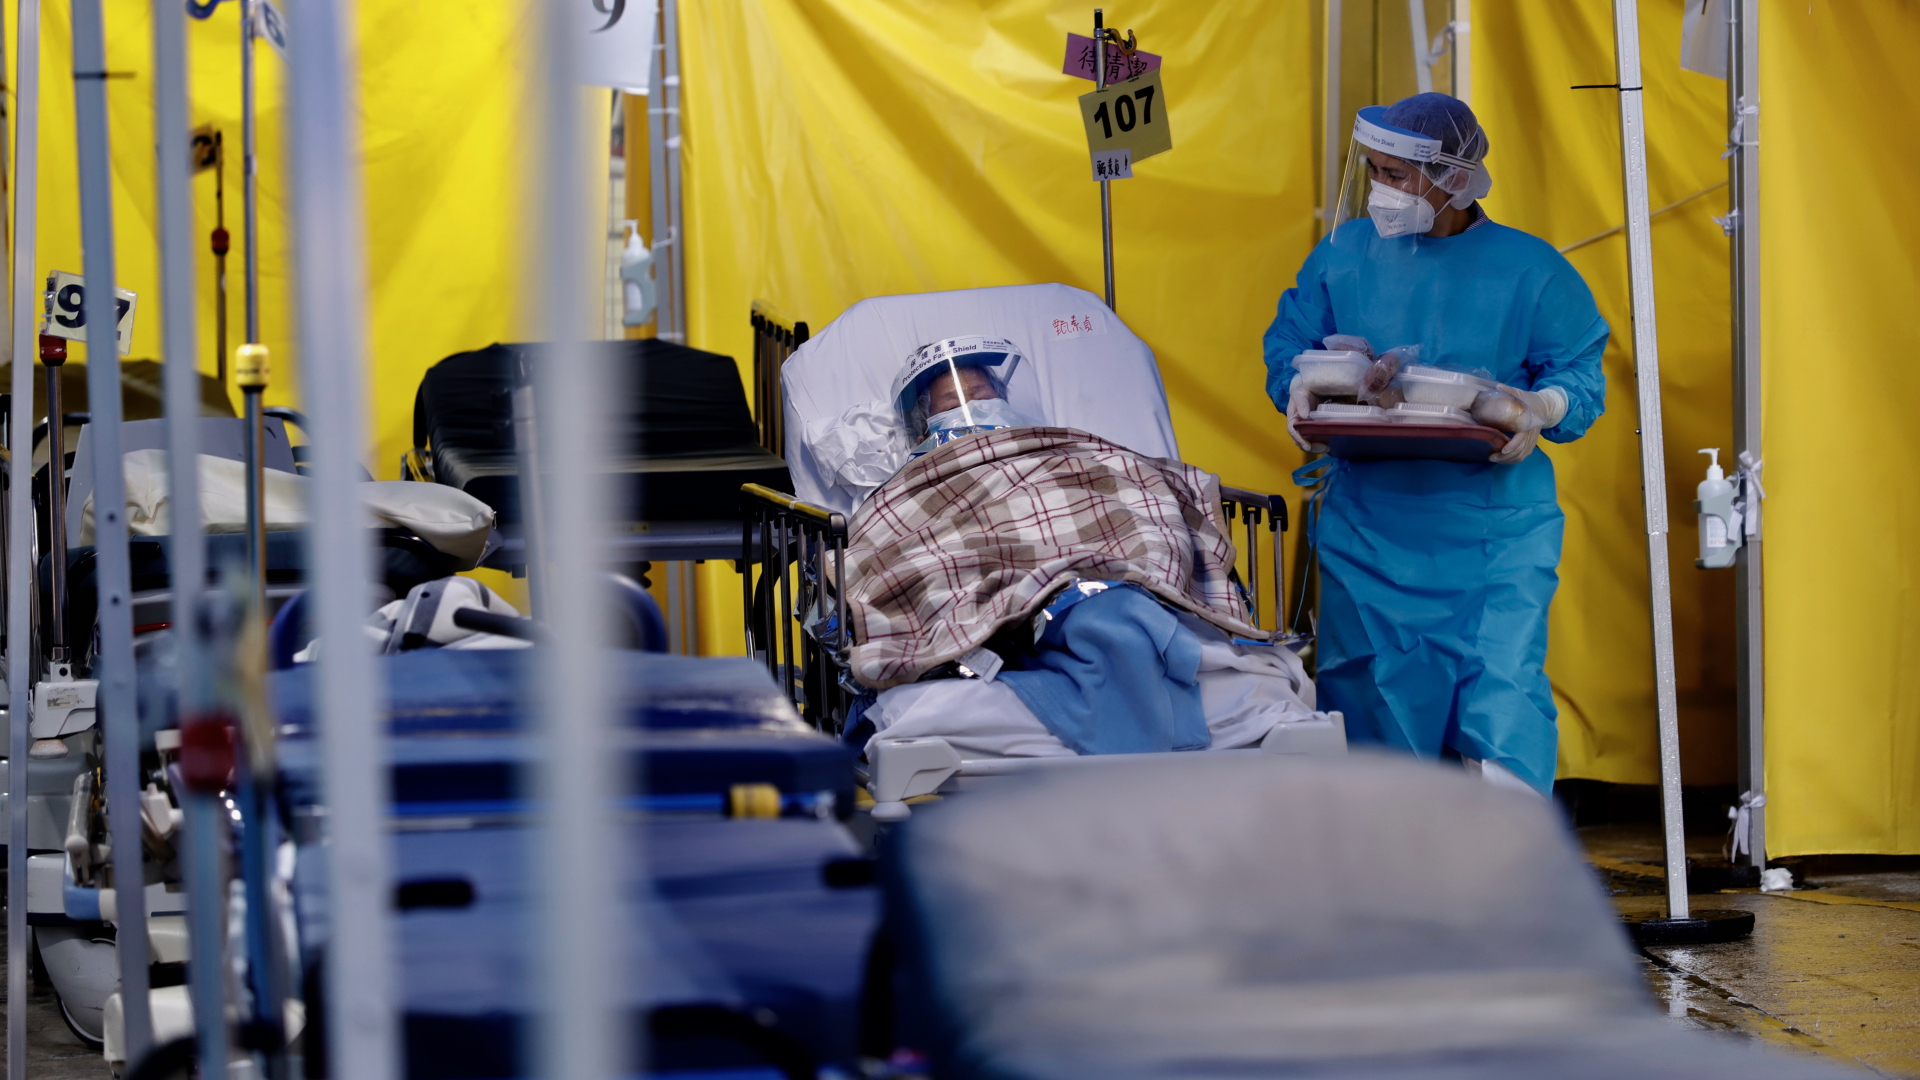 Patienten liegen auf Krankenbetten im provisorischen Wartebereich eines Krankenhauses.  | dpa